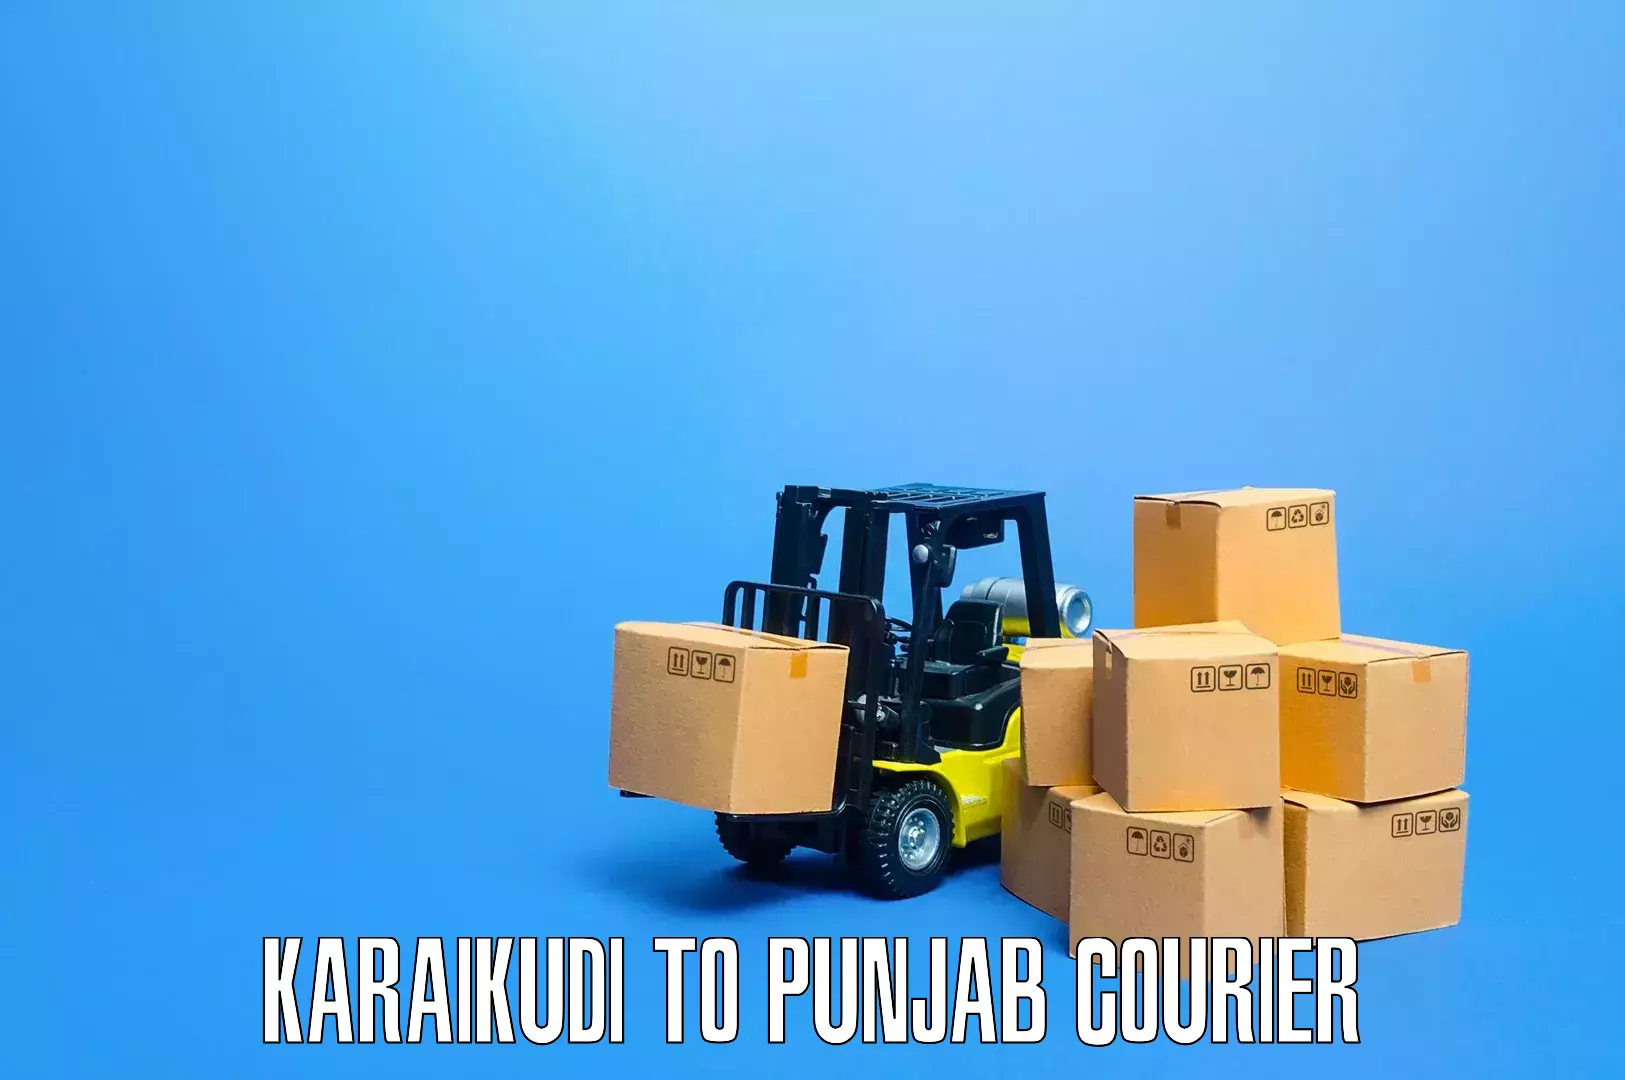 Furniture transport solutions Karaikudi to Punjab